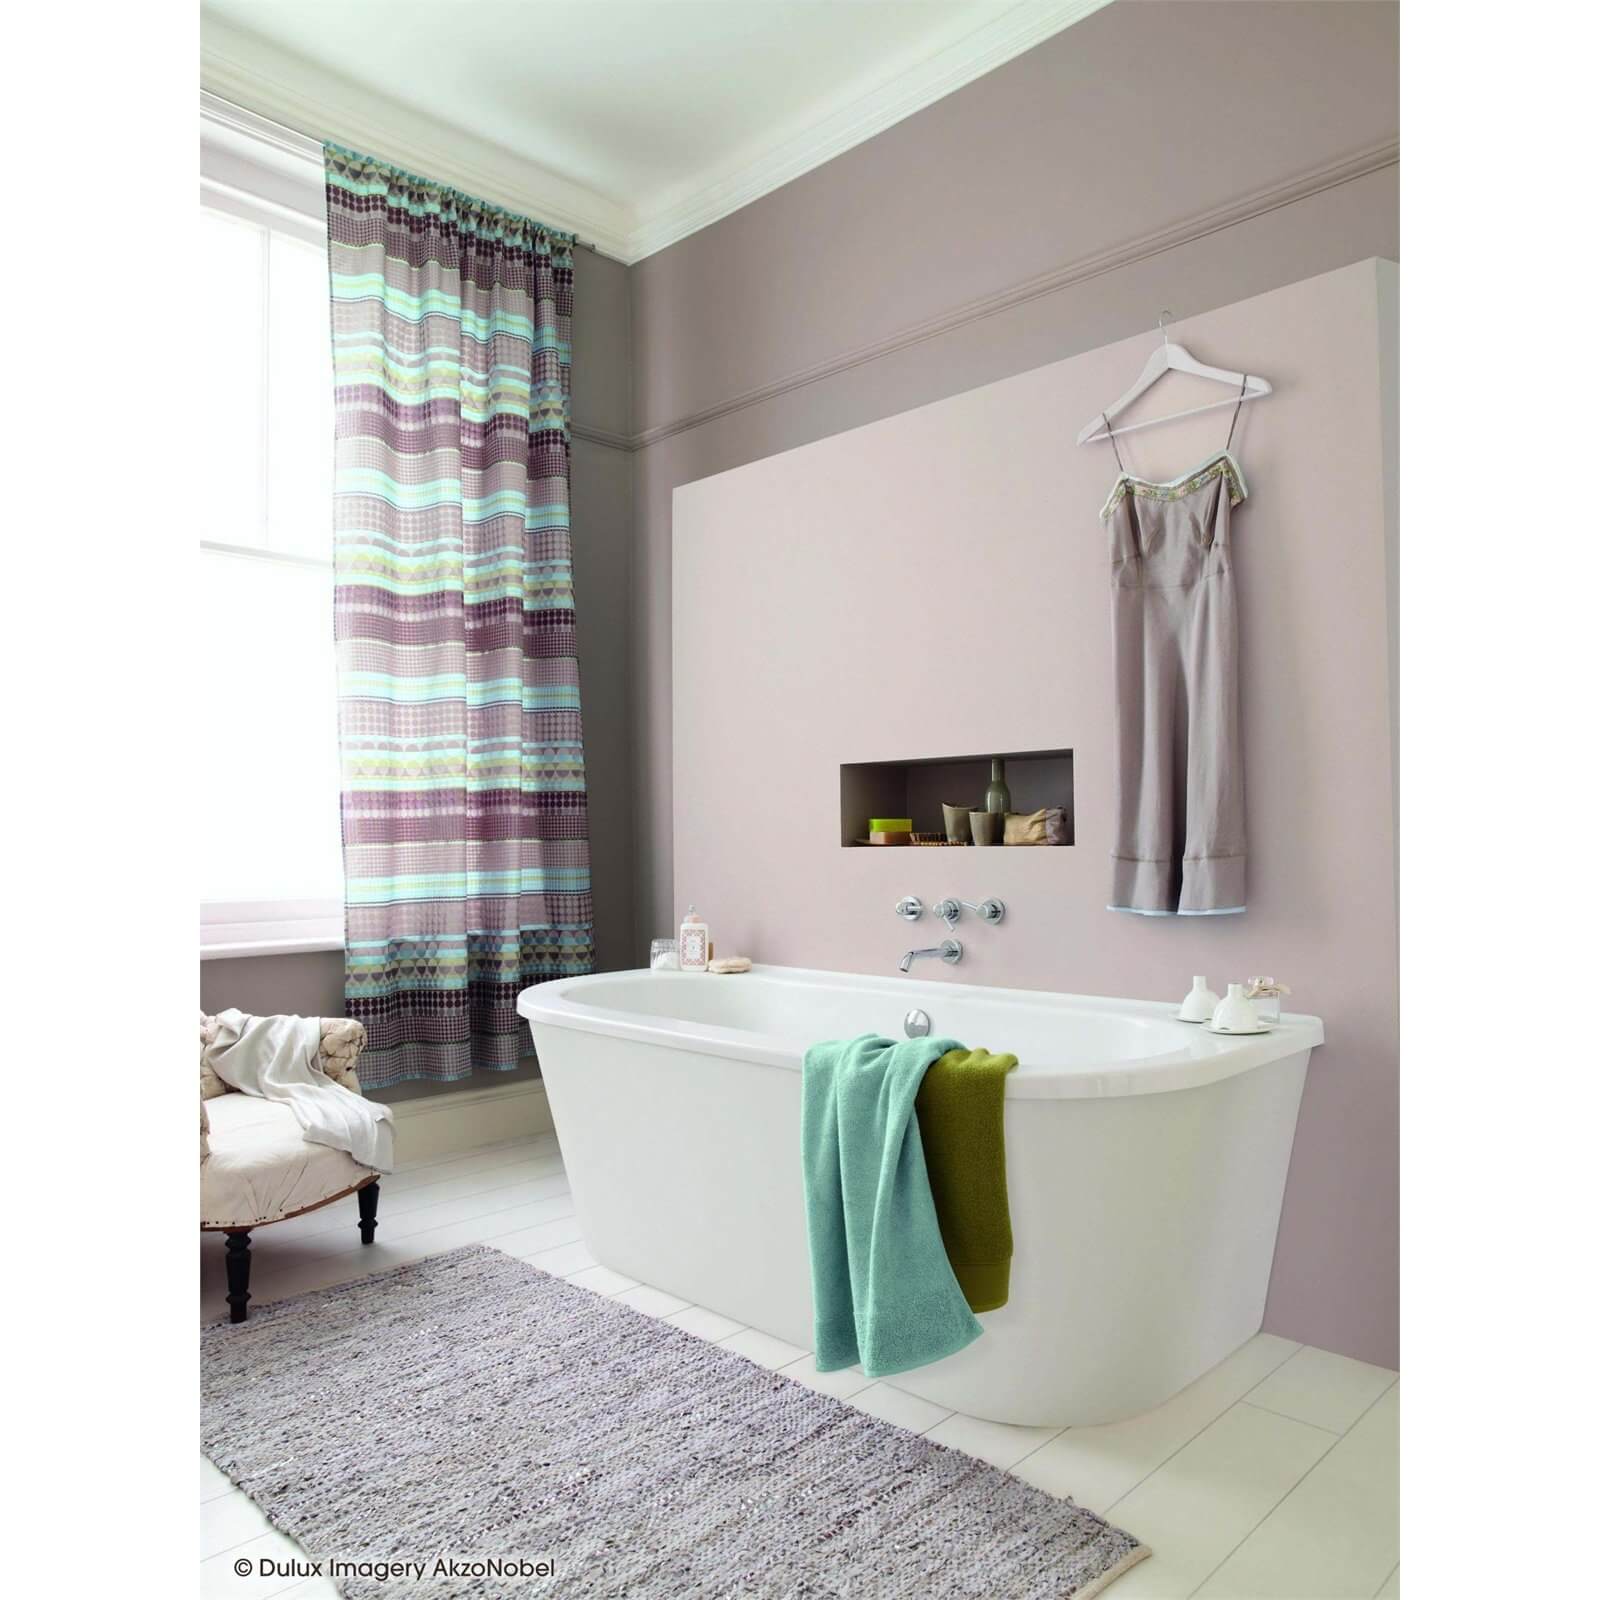 Dulux Easycare Bathroom Mellow Mocha - Soft Sheen Paint - 2.5L